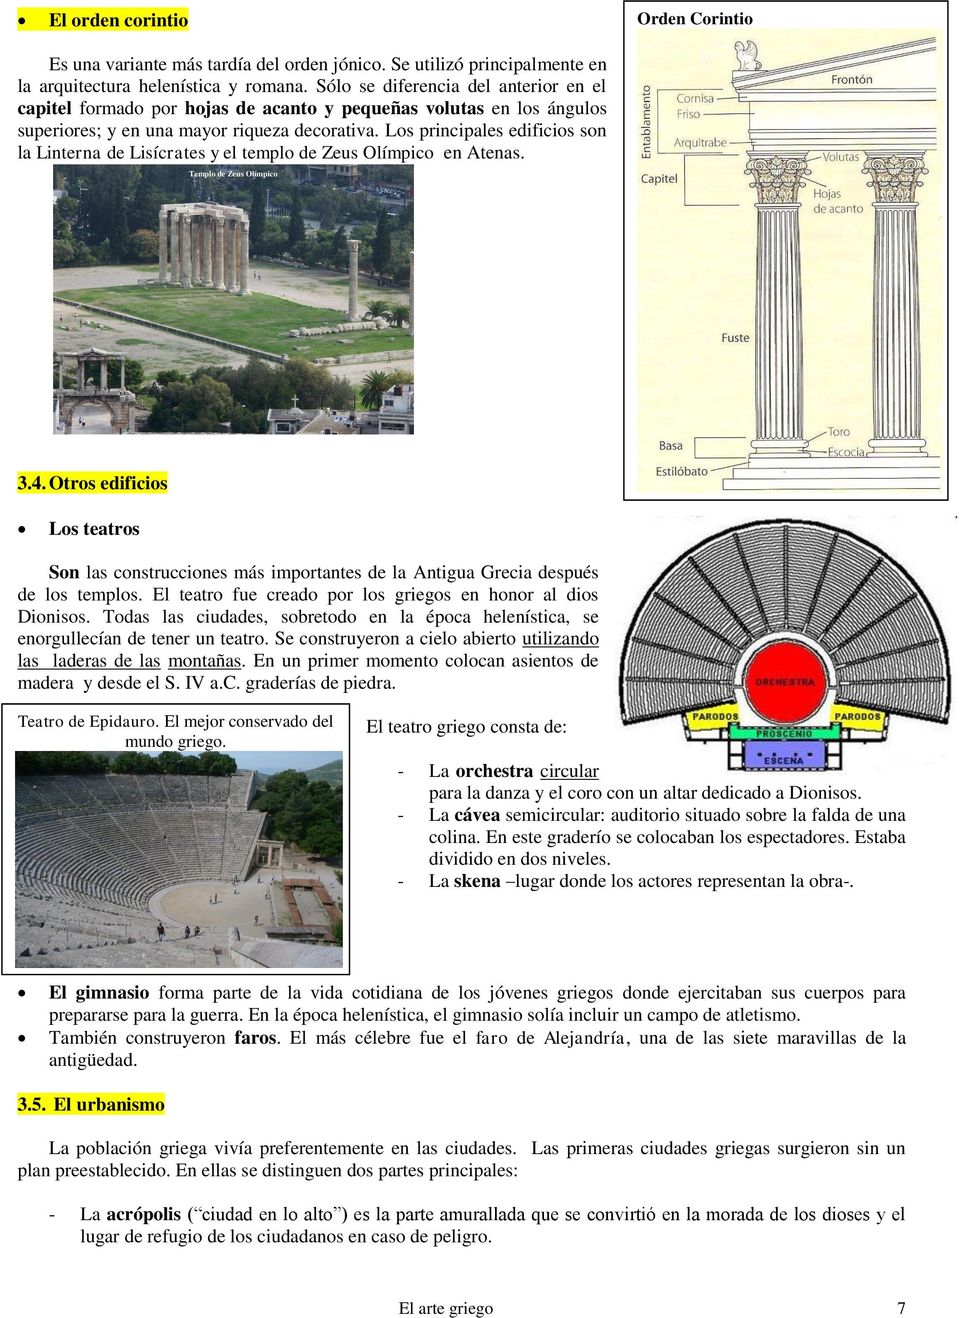 Los principales edificios son la Linterna de Lisícrates y el templo de Zeus Olímpico en Atenas. Templo de Zeus Olímpico 3.4.